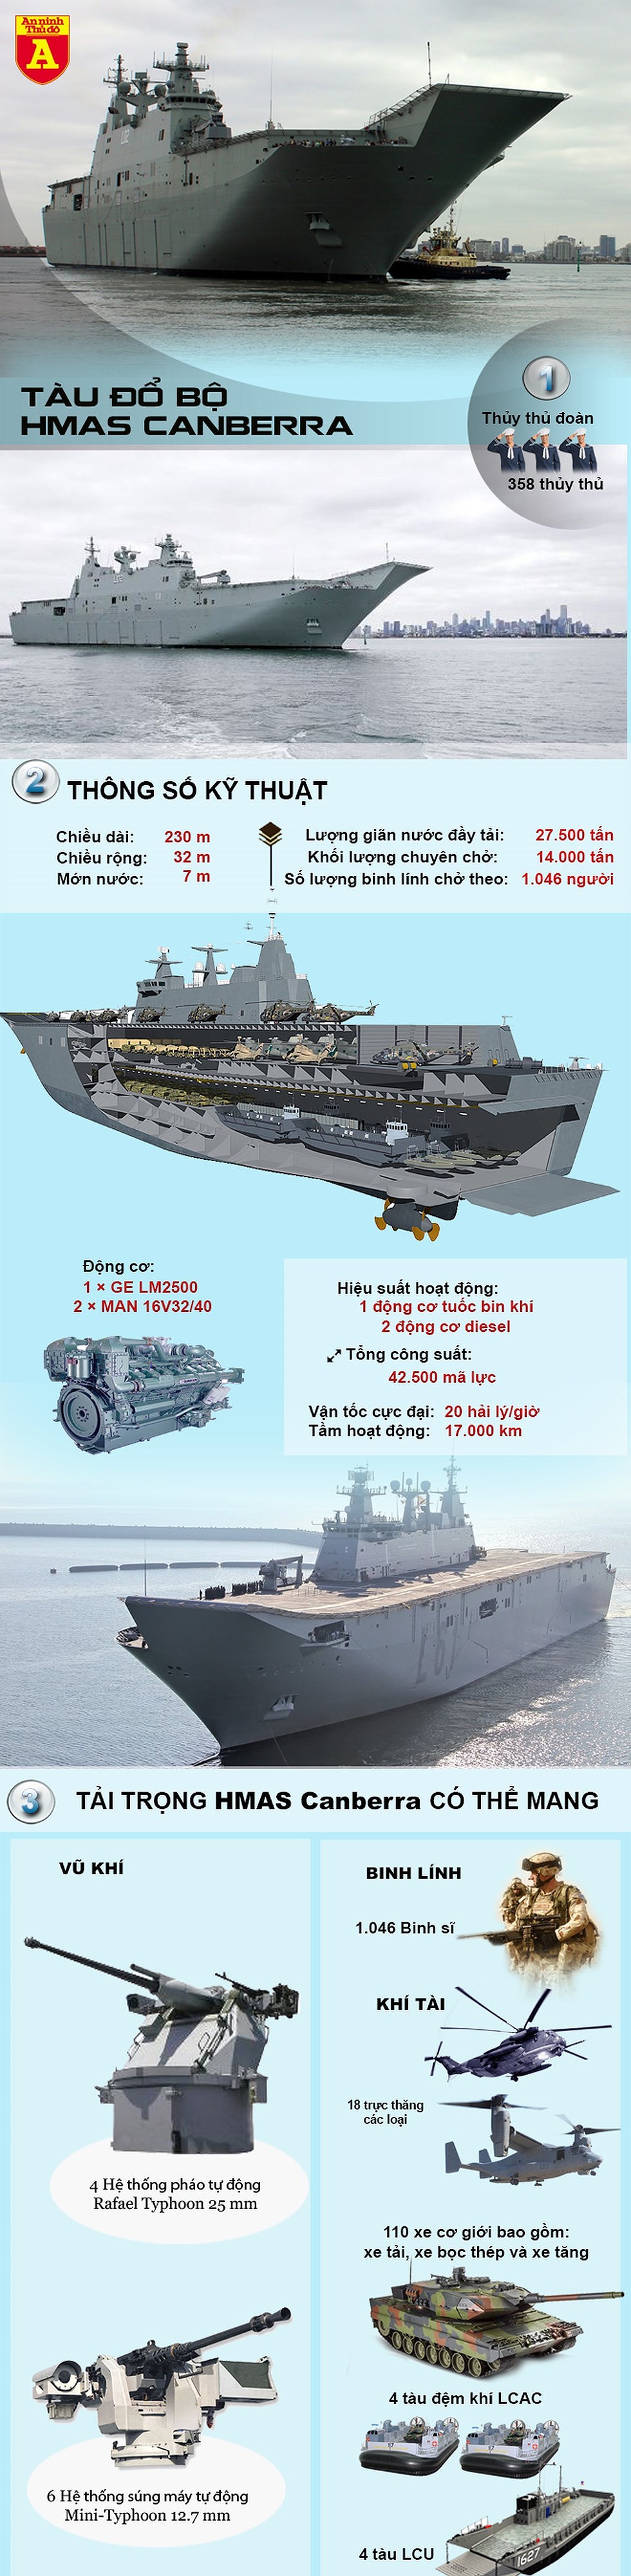 [Infographics] Siêu tàu đổ bộ của Úc, yếu tố gây bất ngờ cho Trung Quốc - Ảnh 1